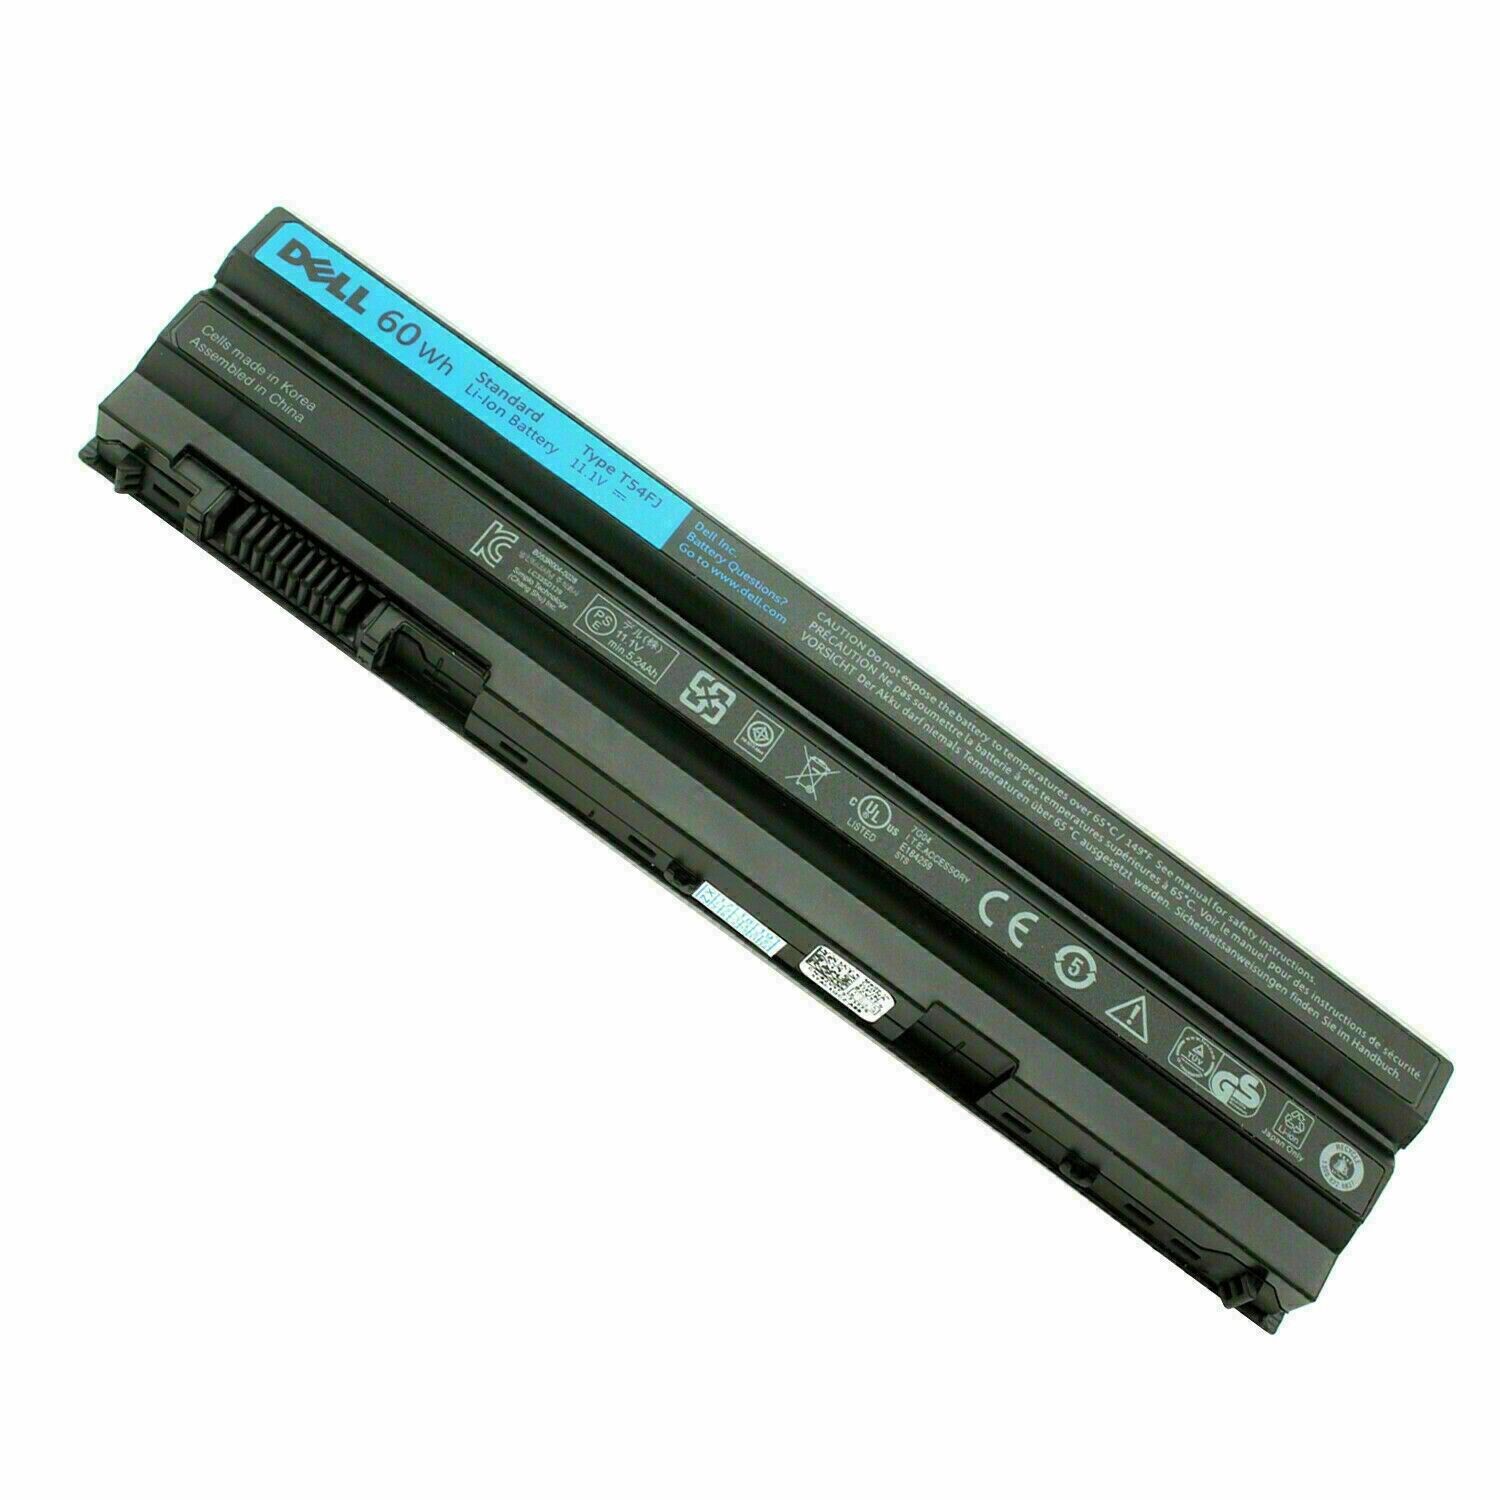 New Genuine E6420 M5Y0X T54FJ Battery For Dell Latitude E5420 E6430 E6520 60wh